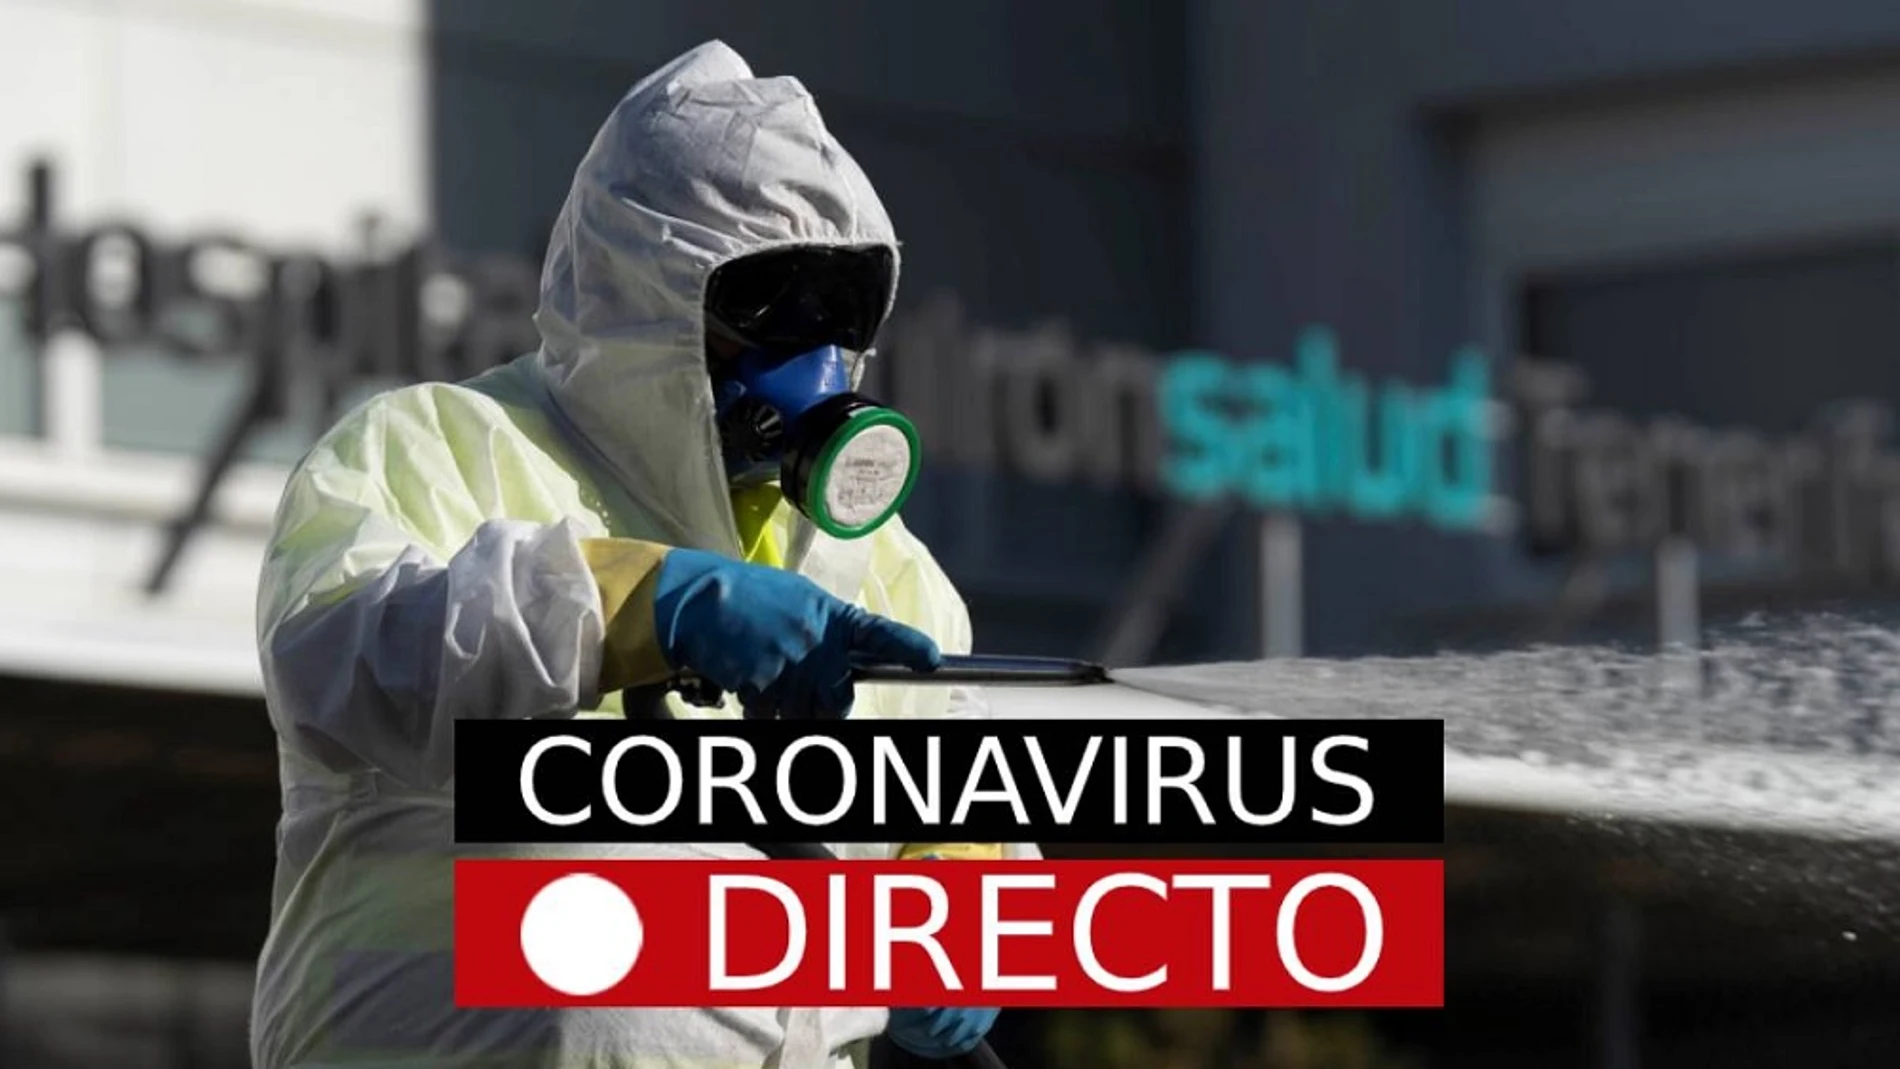 Imagen de una persona con material de protección frente al coronavirus